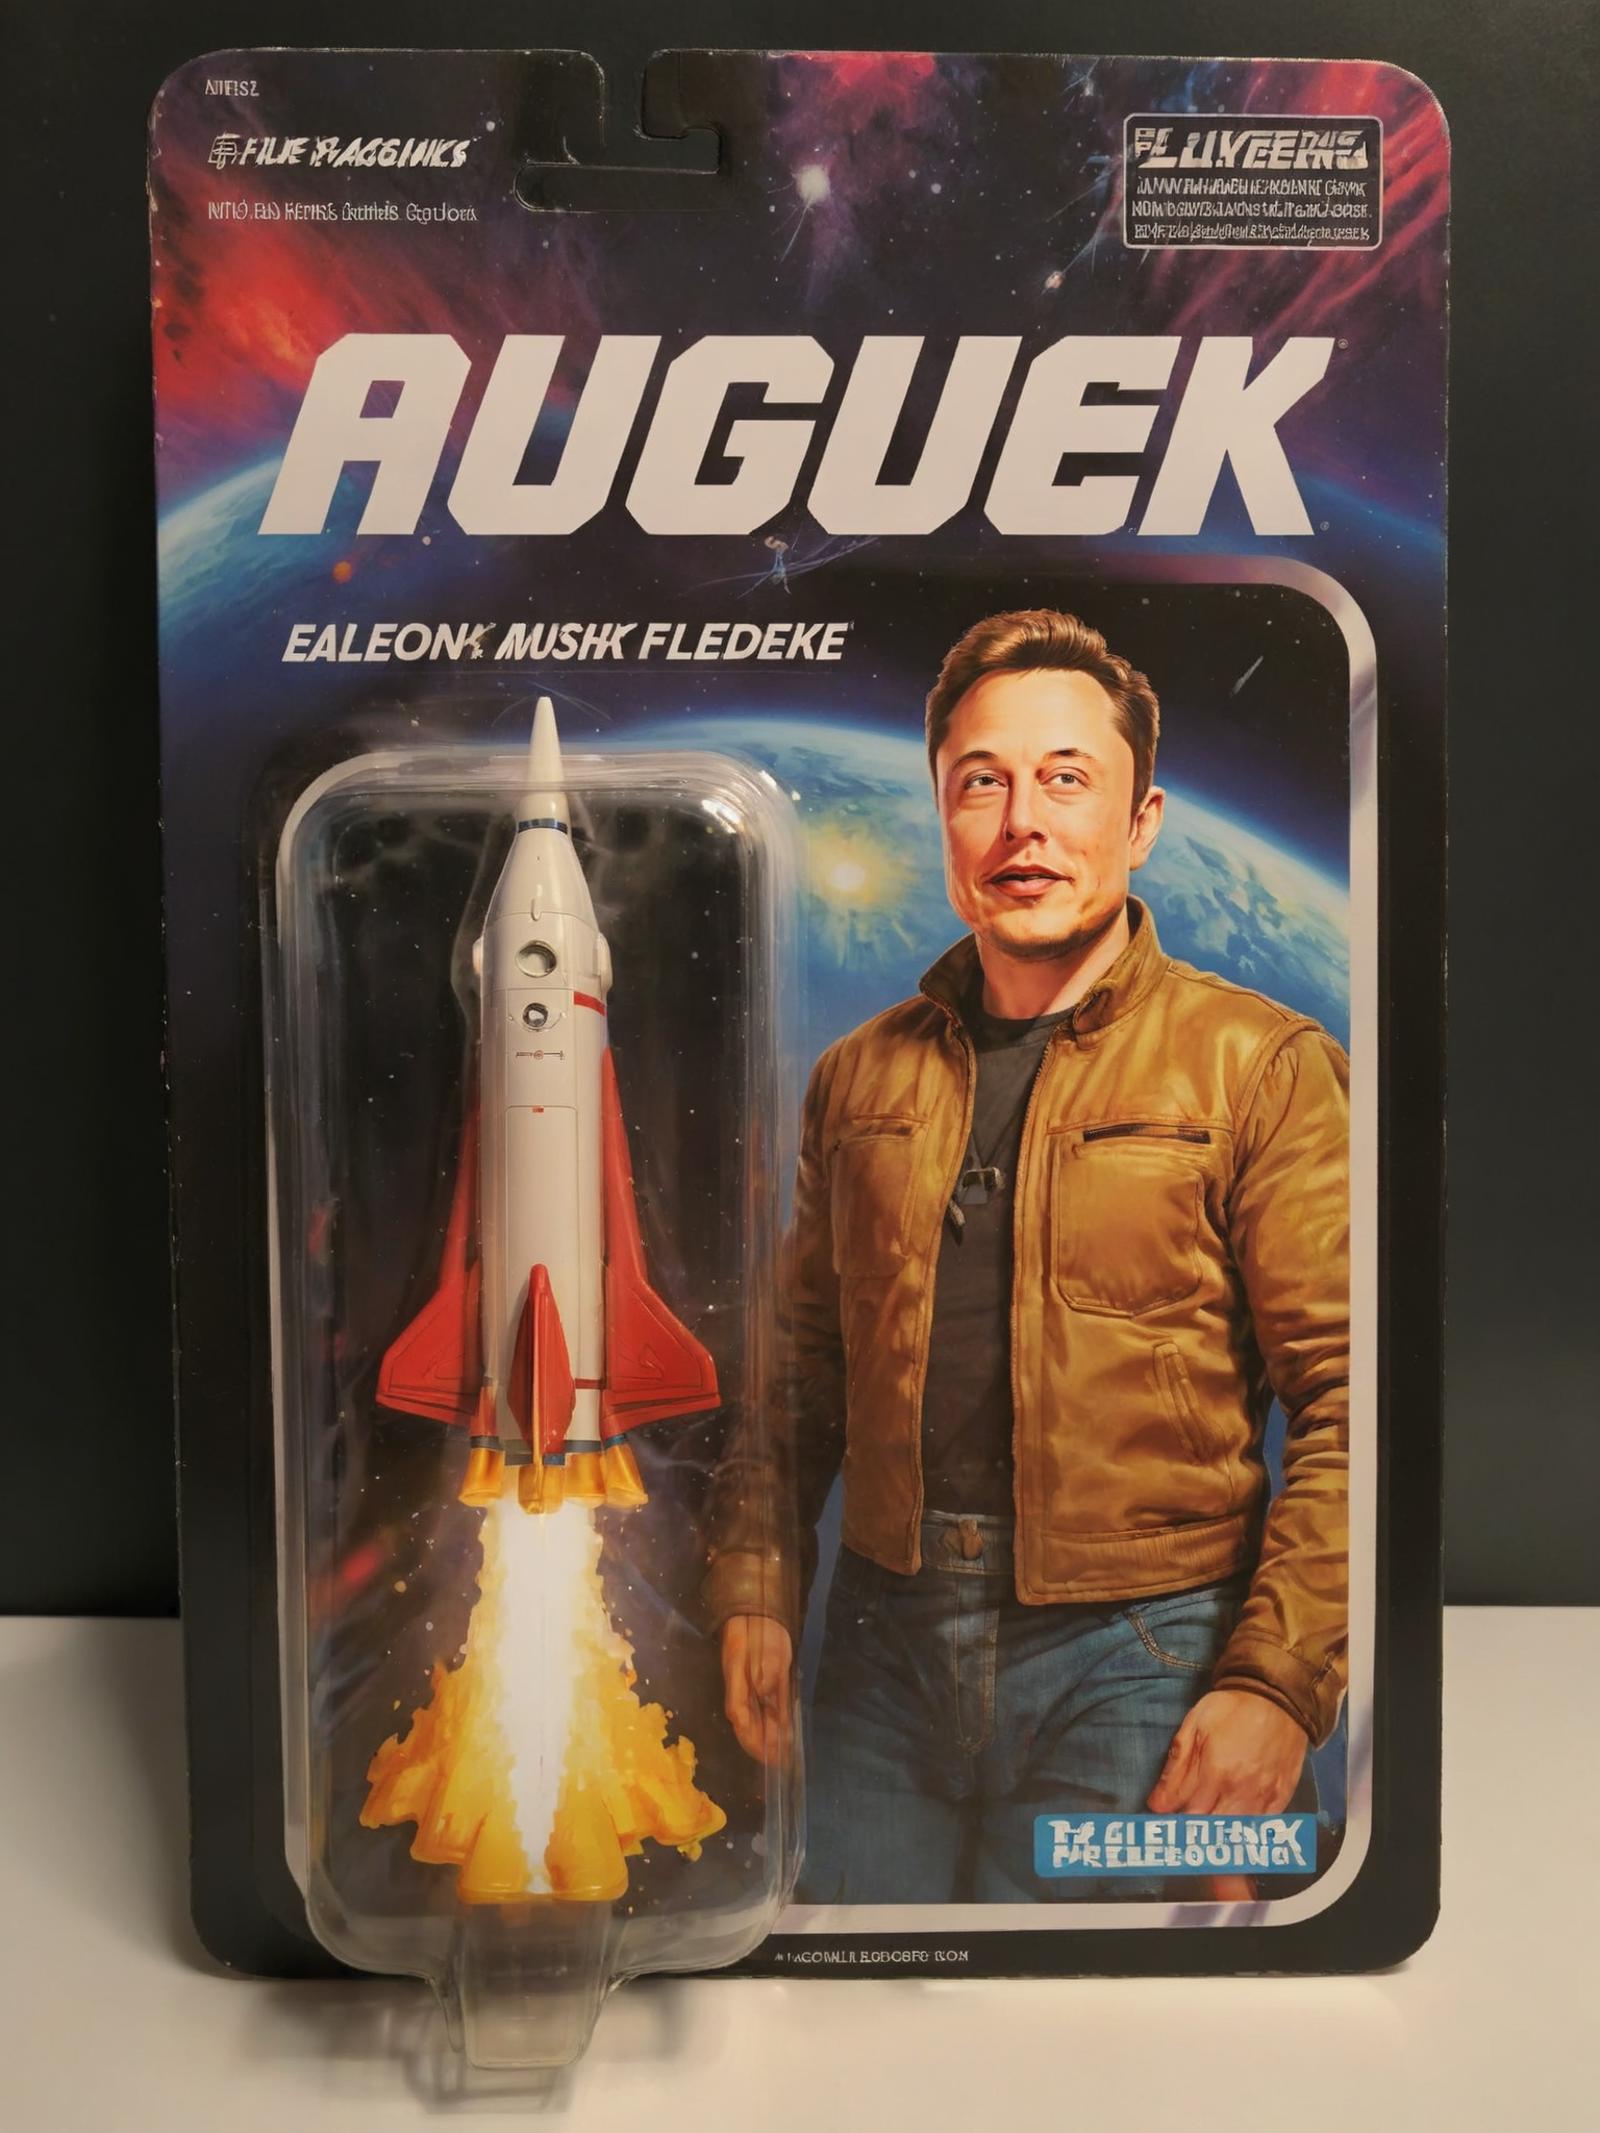 Elon Musk as Tony Stark in Iron Man suit action figure.